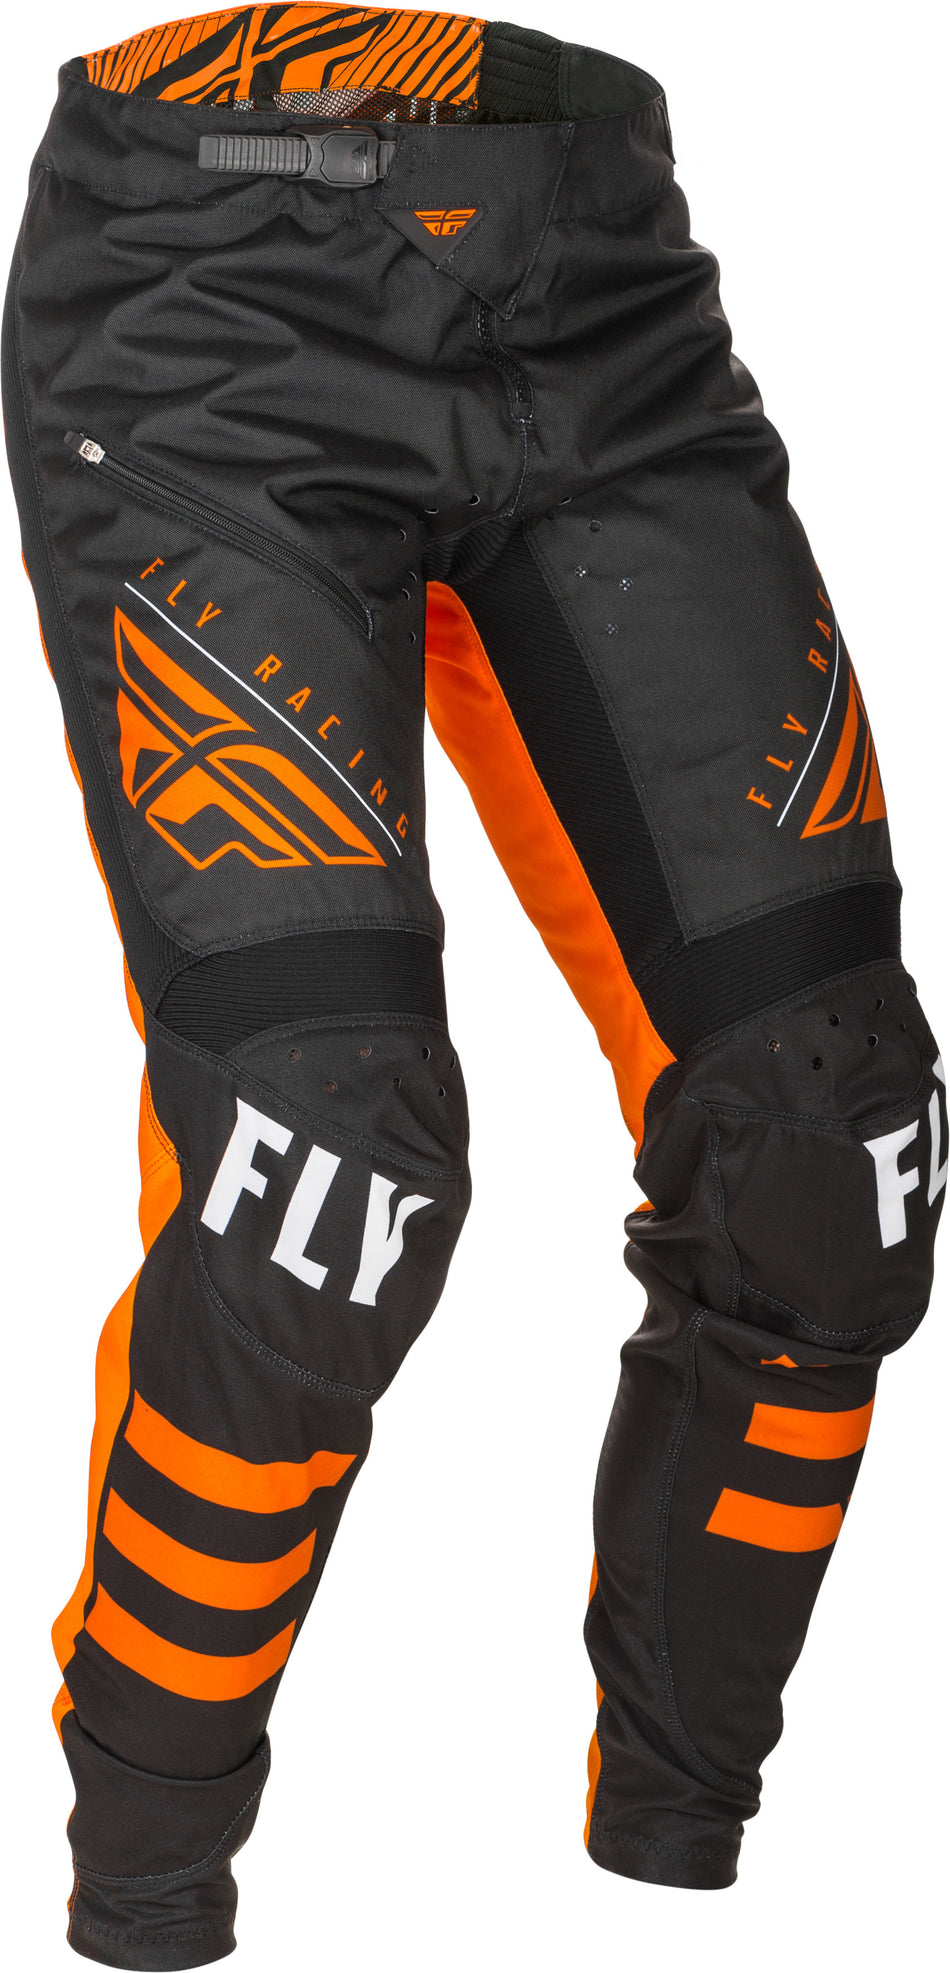 FLY RACING Kinetic Bicycle Pants Black/Orange Sz 26 373-04726